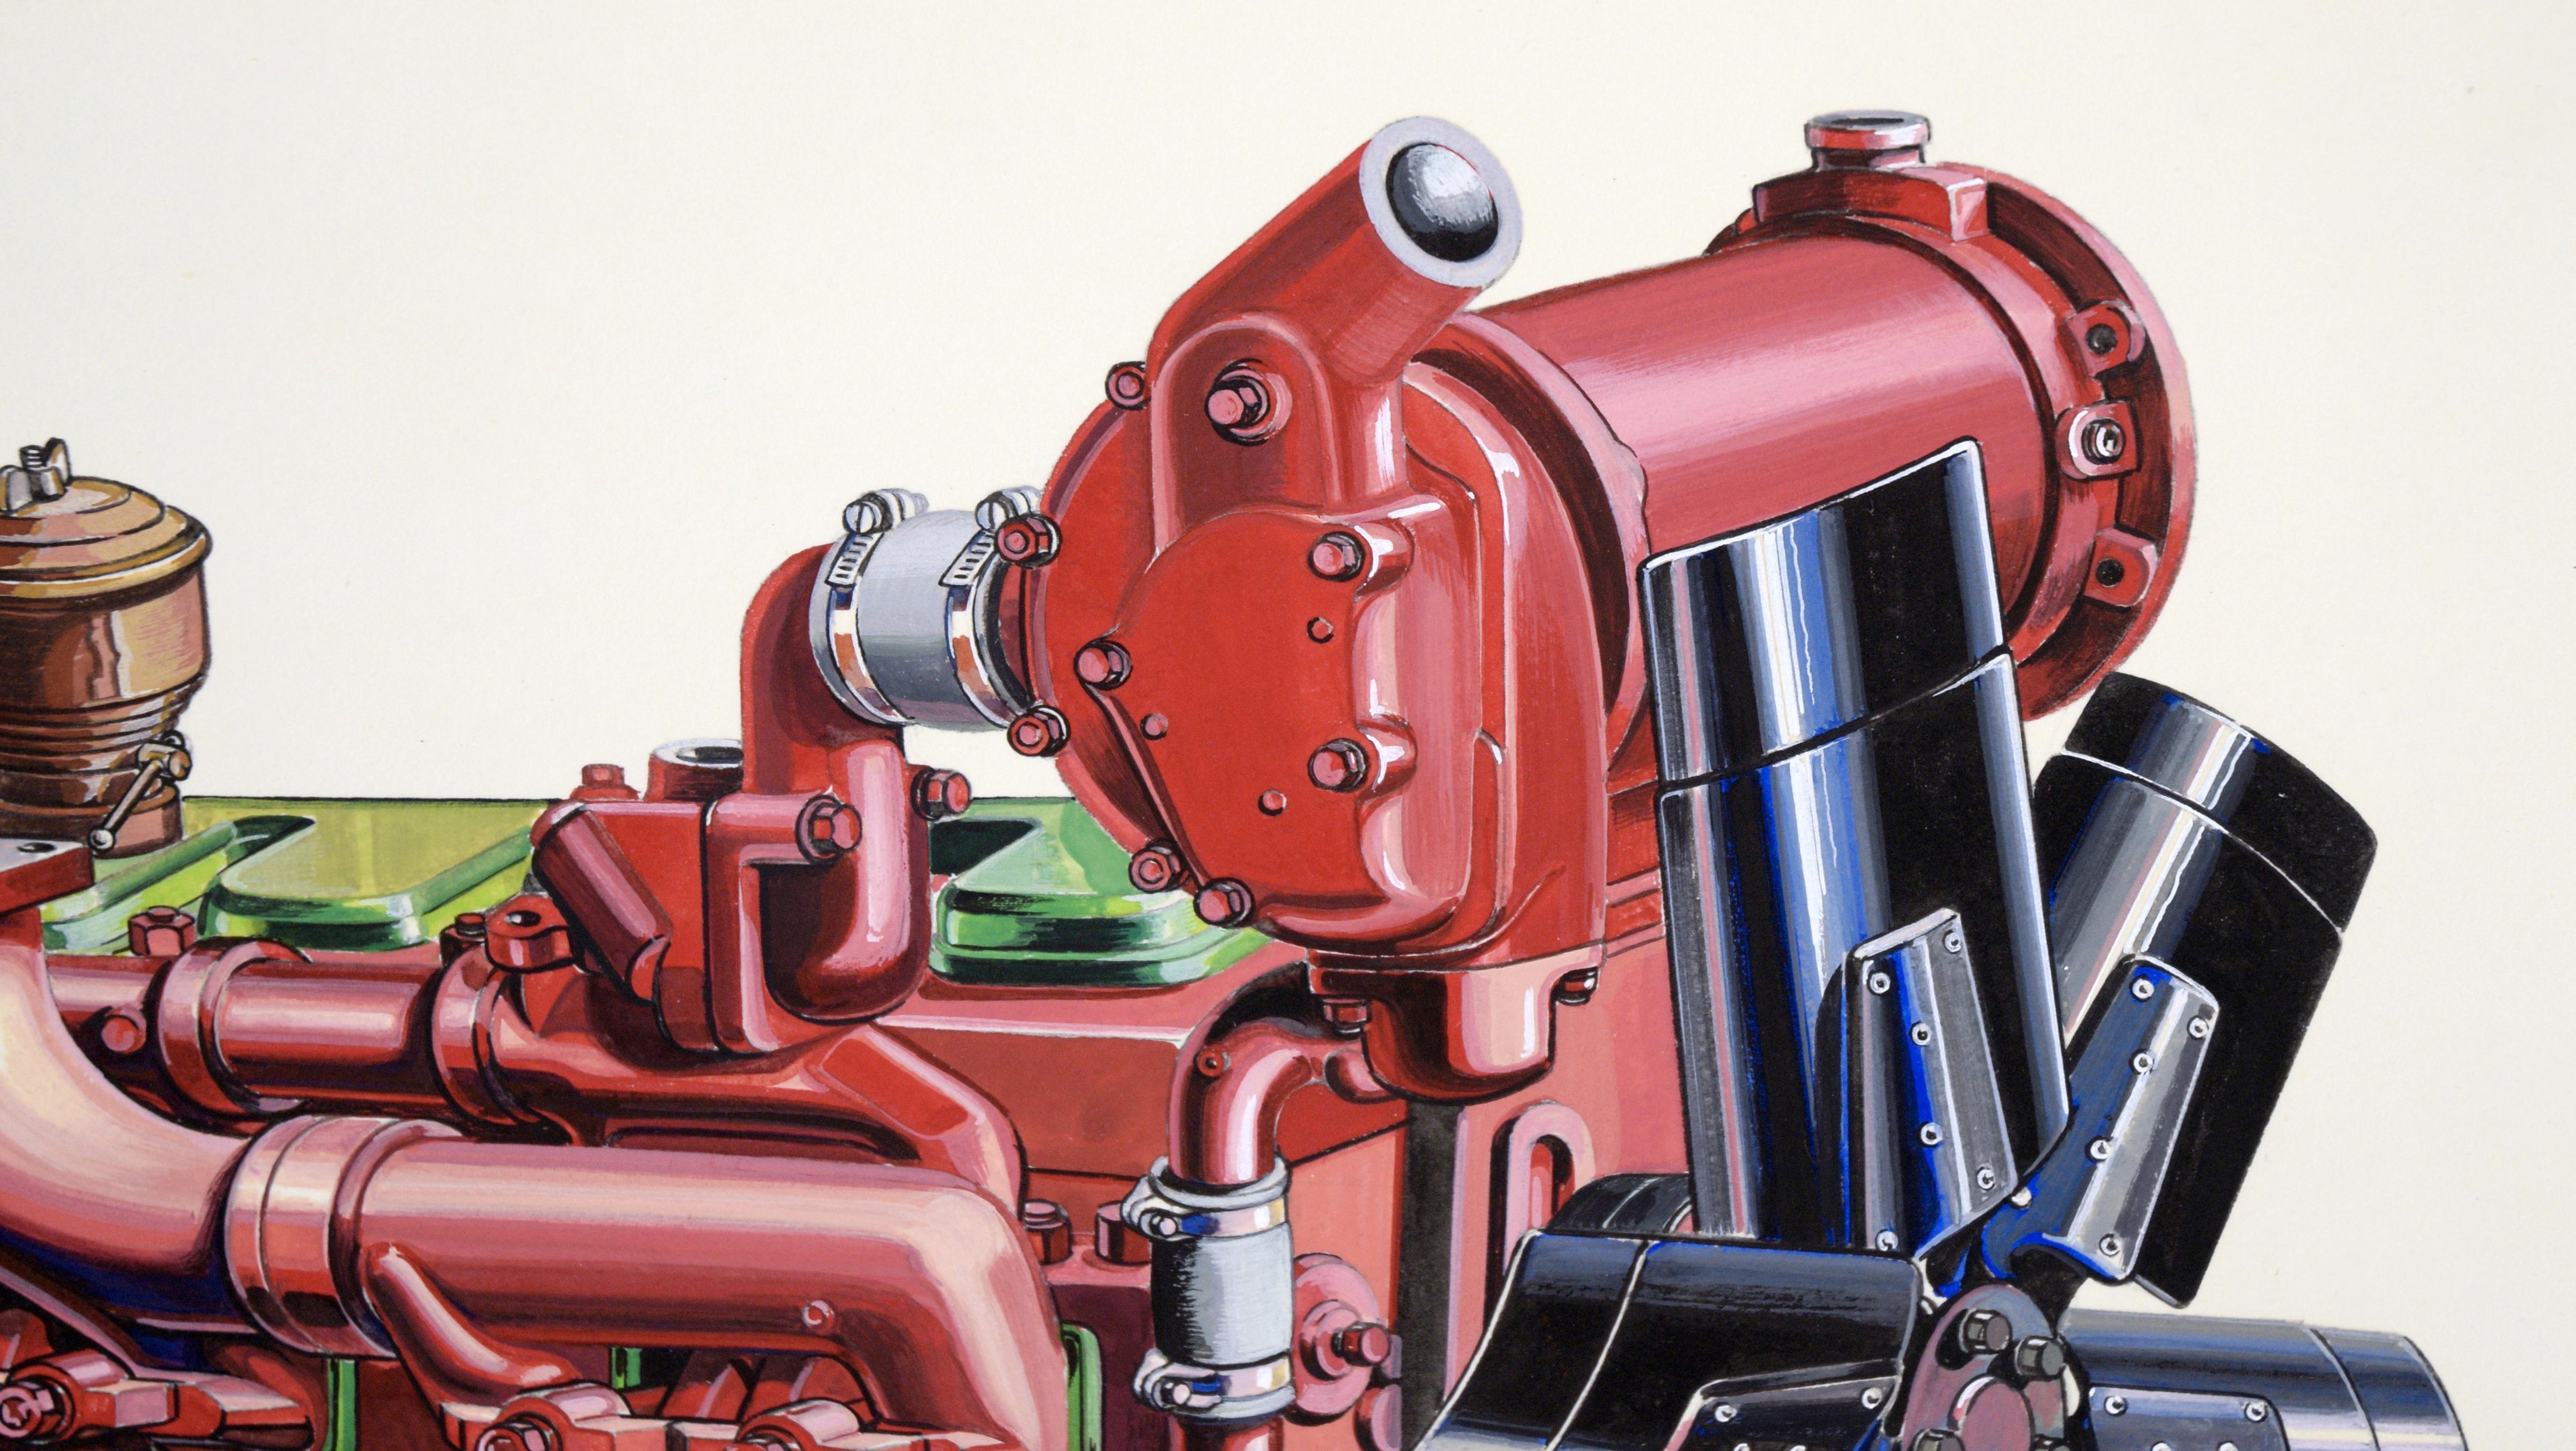 Illustration technique d'un moteur diesel Ford Lehman à la gouache sur carton épais

Illustration très détaillée et précise d'un moteur par Joseph Yeager (américain, 20e siècle). Le moteur est rouge vif avec quelques touches de vert. Il est rendu